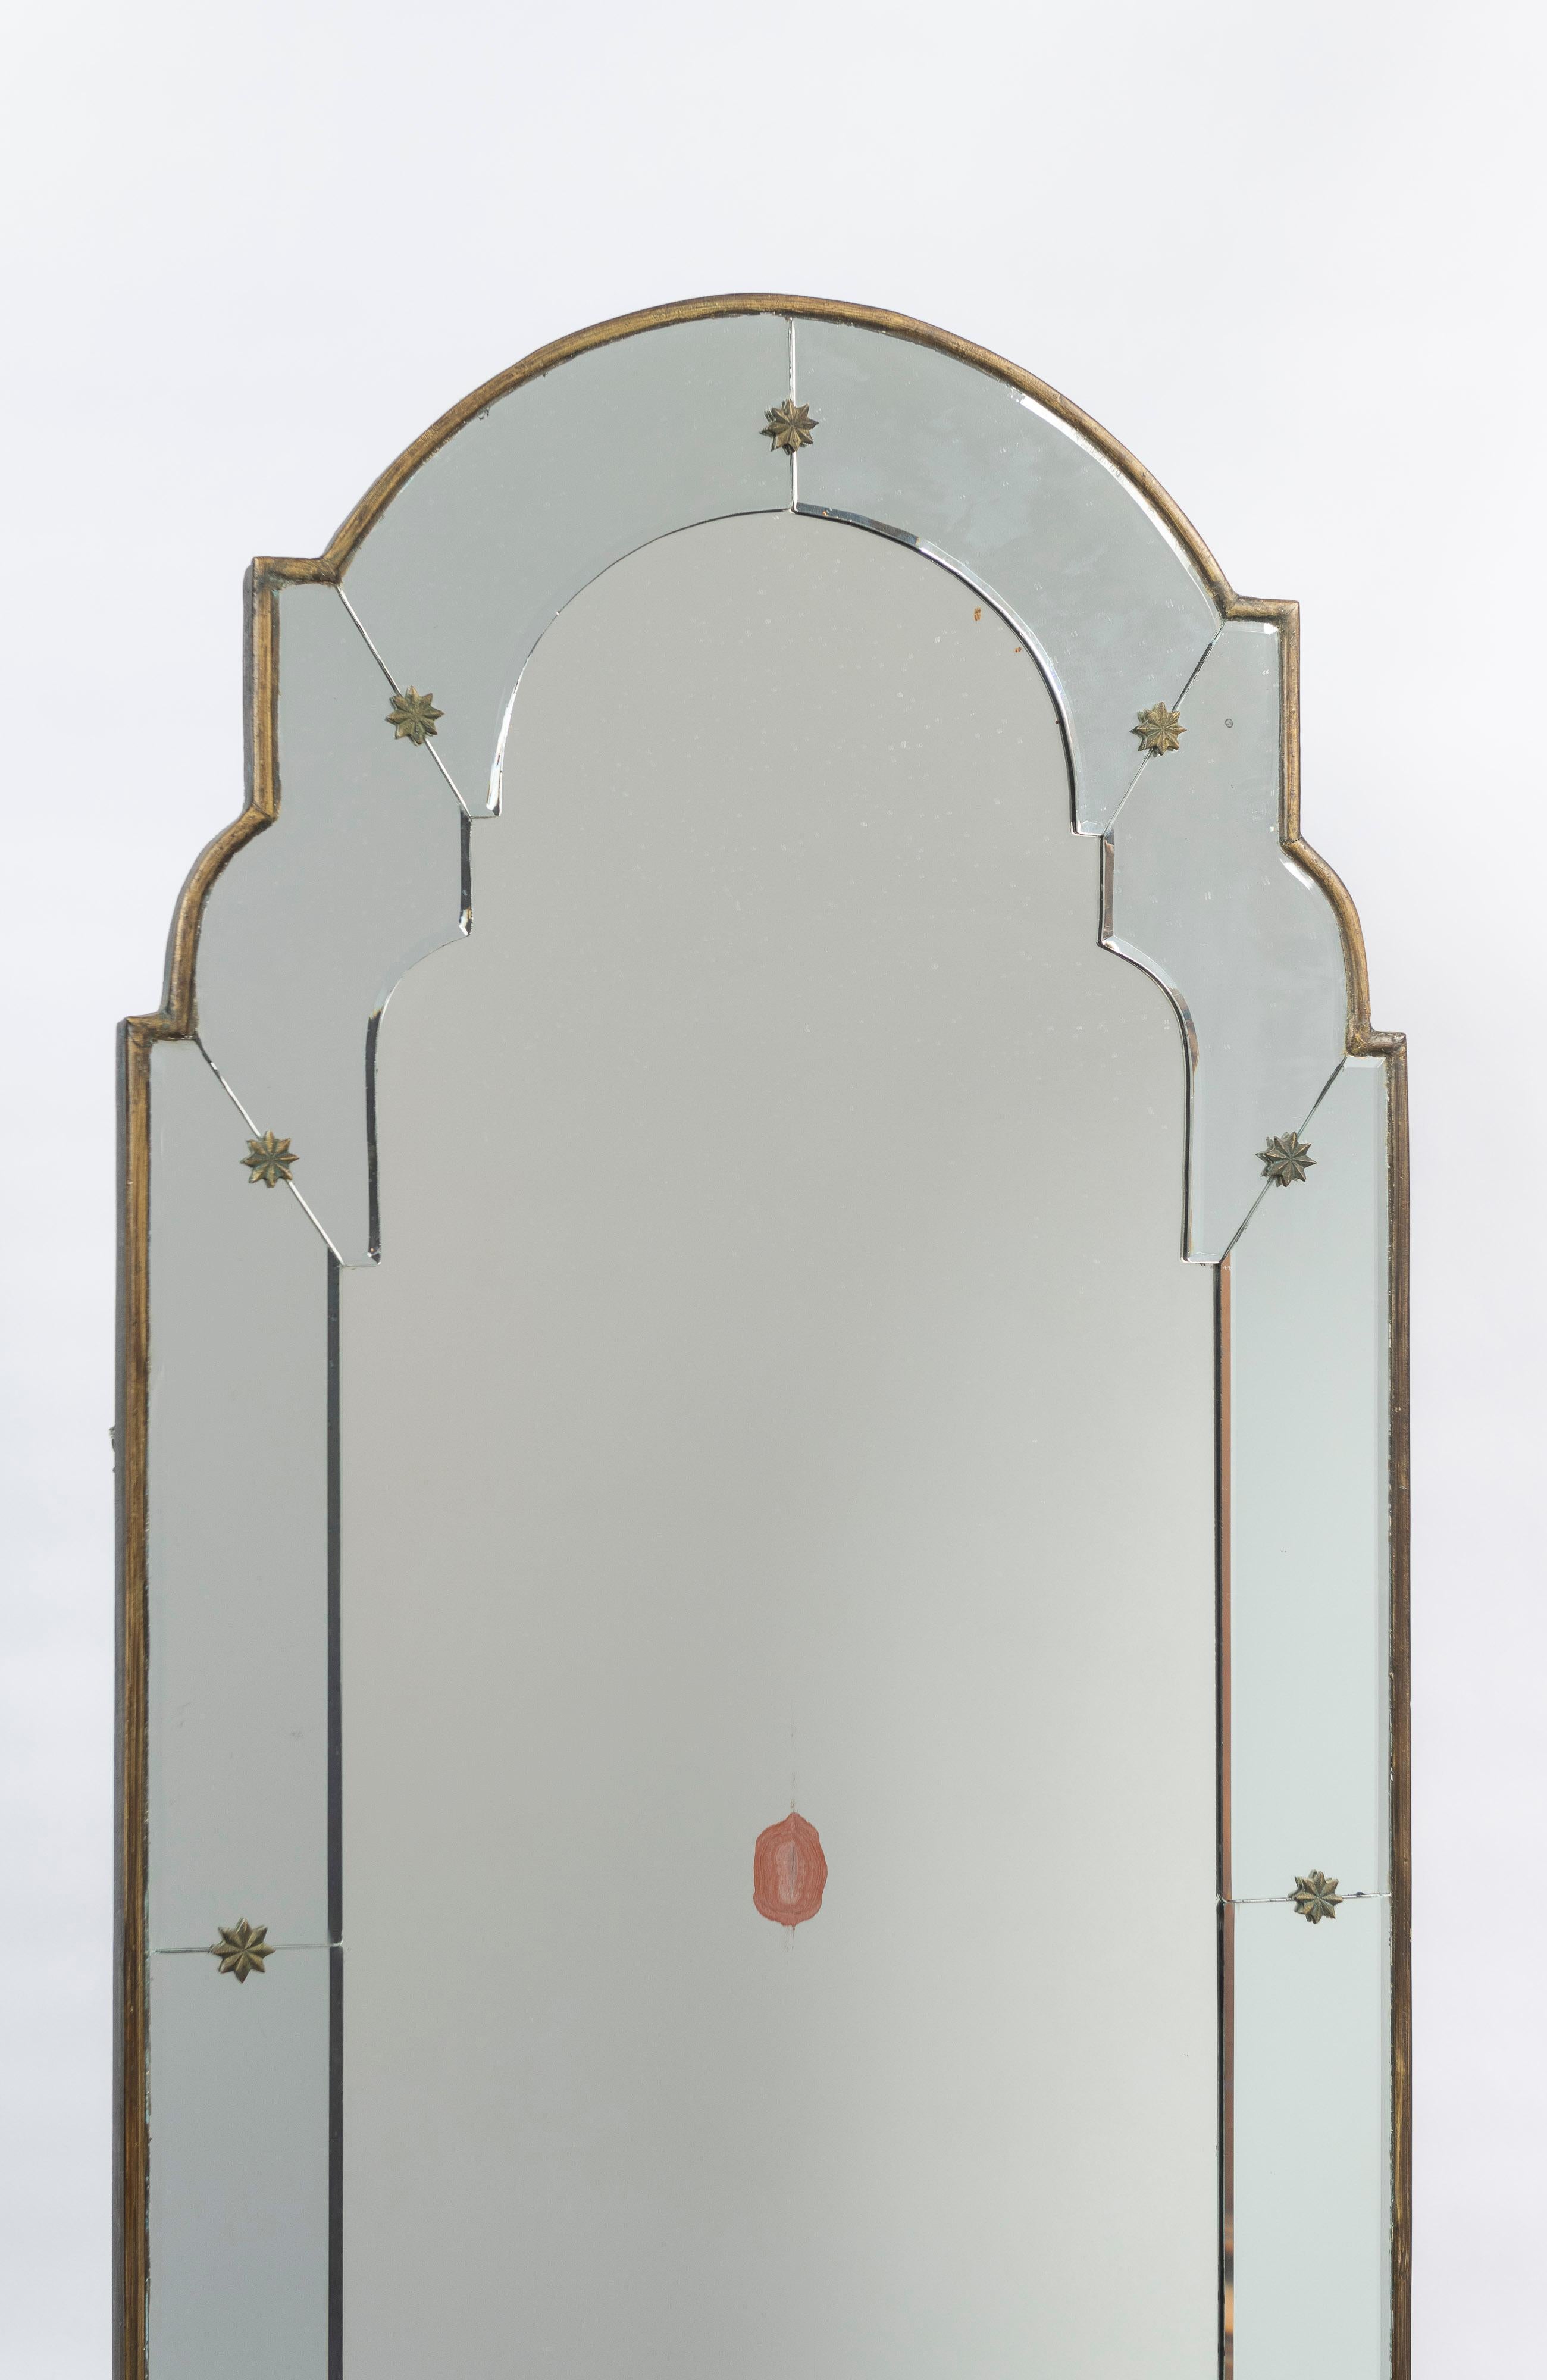 Le miroir mural de style vénitien est arqué avec un cadre biseauté, des formes florales en bronze laqué et un bord en bois doré. Le miroir présente plusieurs fissures visibles sur les photos ainsi que quelques zones abîmées. Bonne pièce pour créer